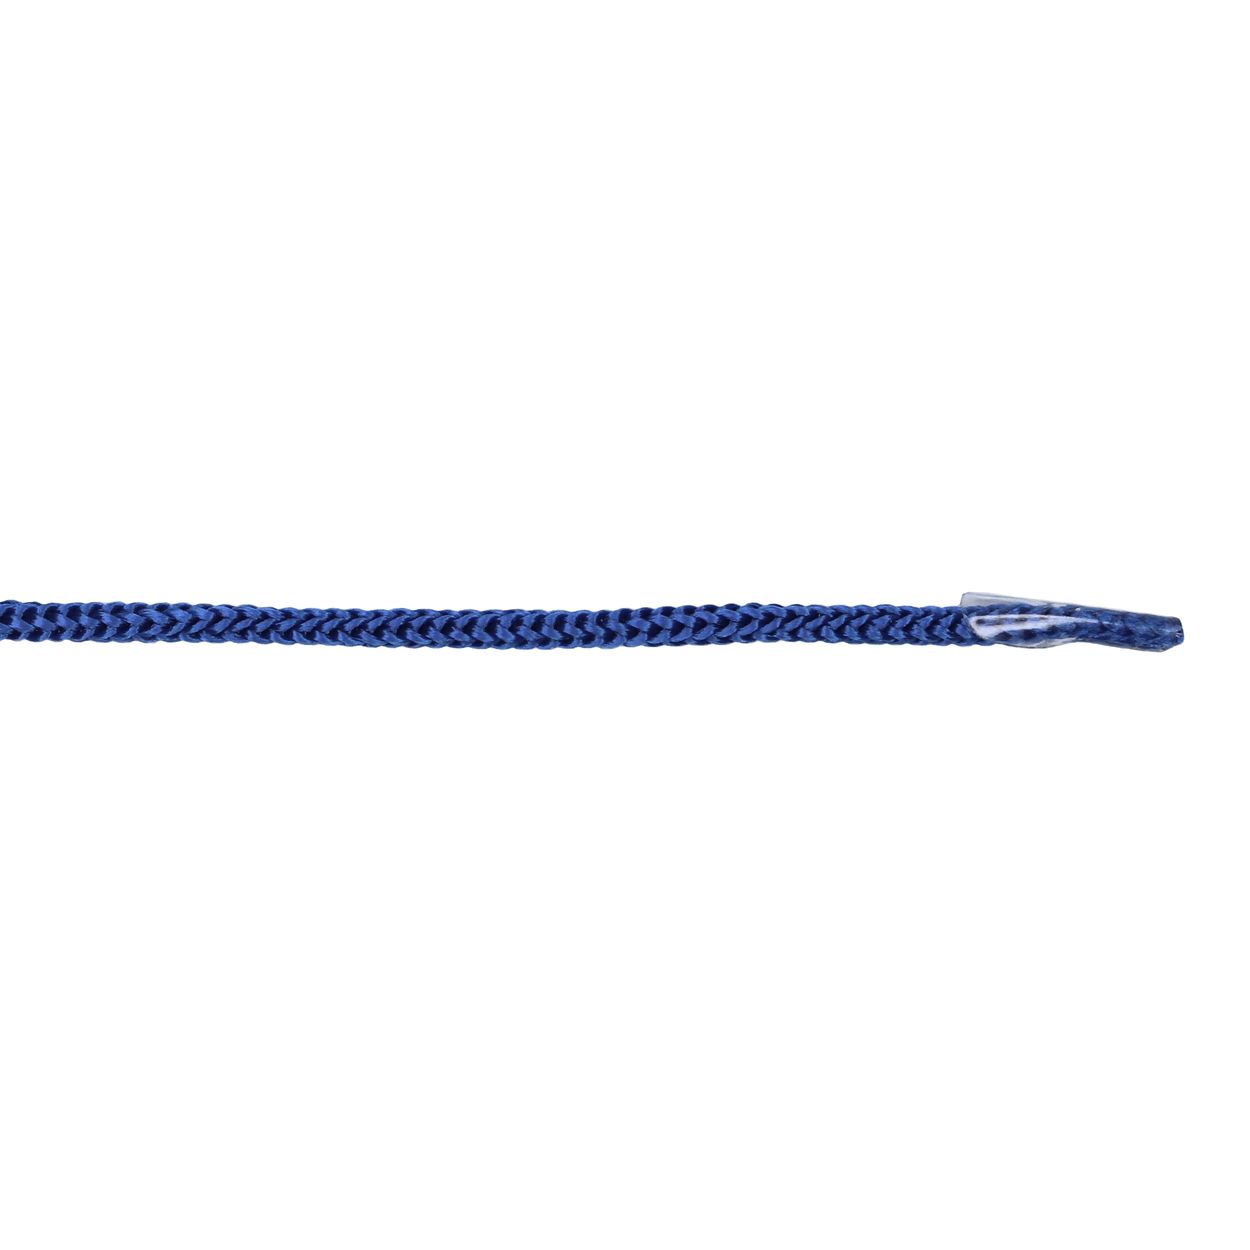 Шнурок для пакетов с крючком арт. 4В511 п/п, диам. 4 мм, дл. 35 см, № 180 ДС синий (уп. 50 пар)